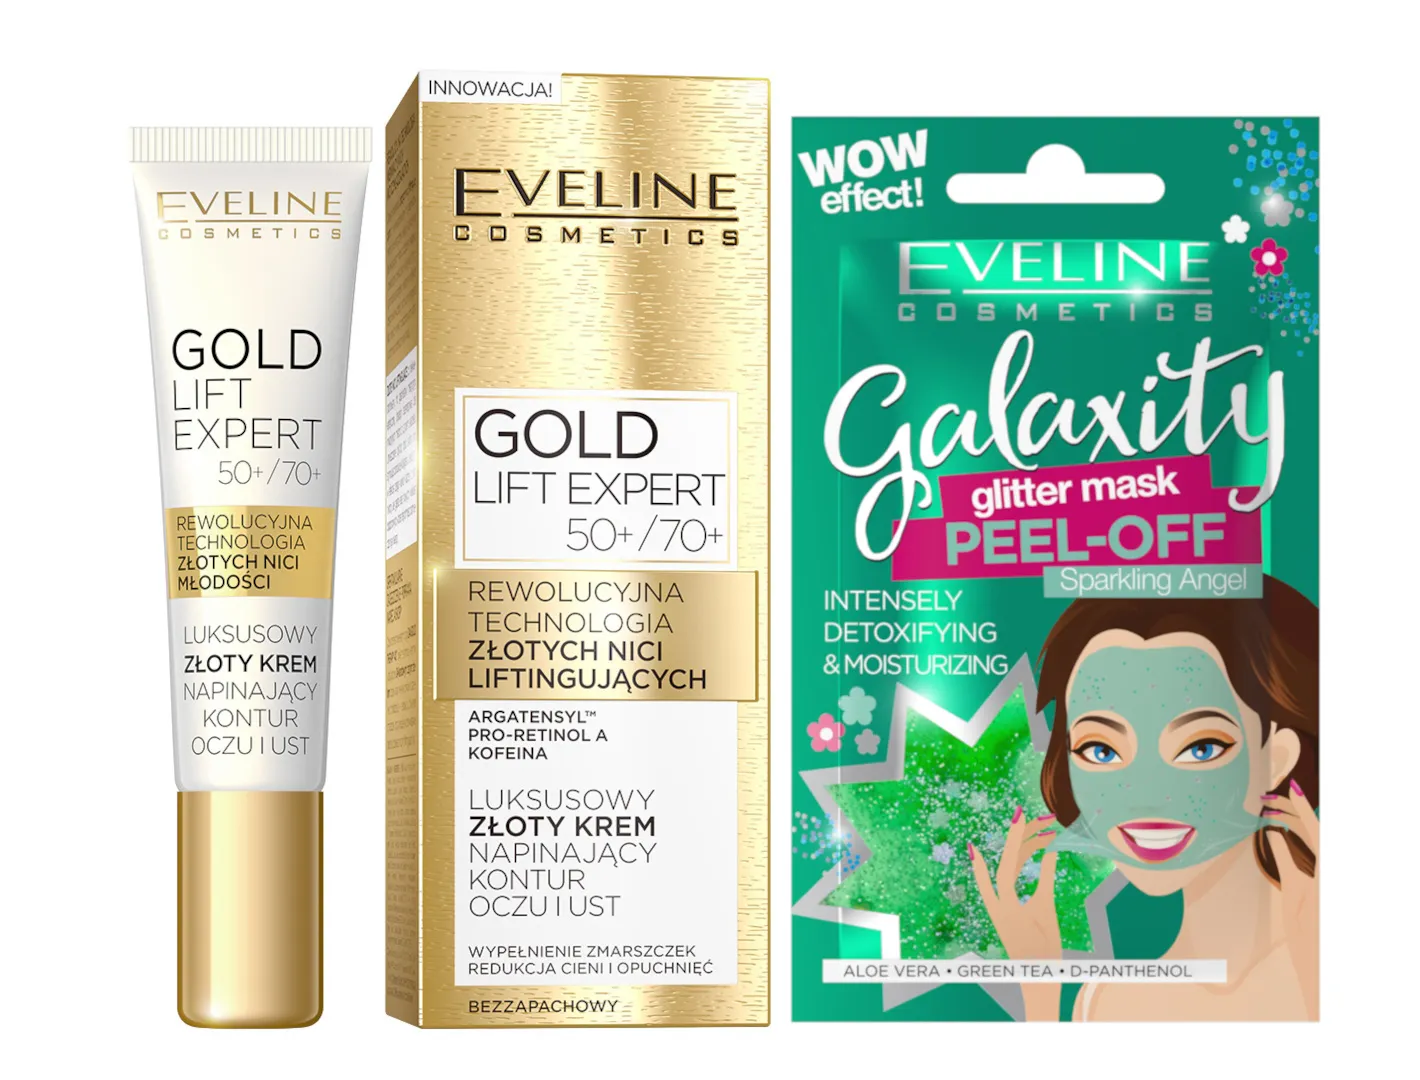 Eveline Cosmetics Gold Lift Expert luksusowy zloty krem napinajacy kontur oczu i ust 50+/70+, 15 ml + Eveline Cosmetics Detoksykująco-nawilżająca maseczka peel-off z połyskującymi drobinkami, 10 ml